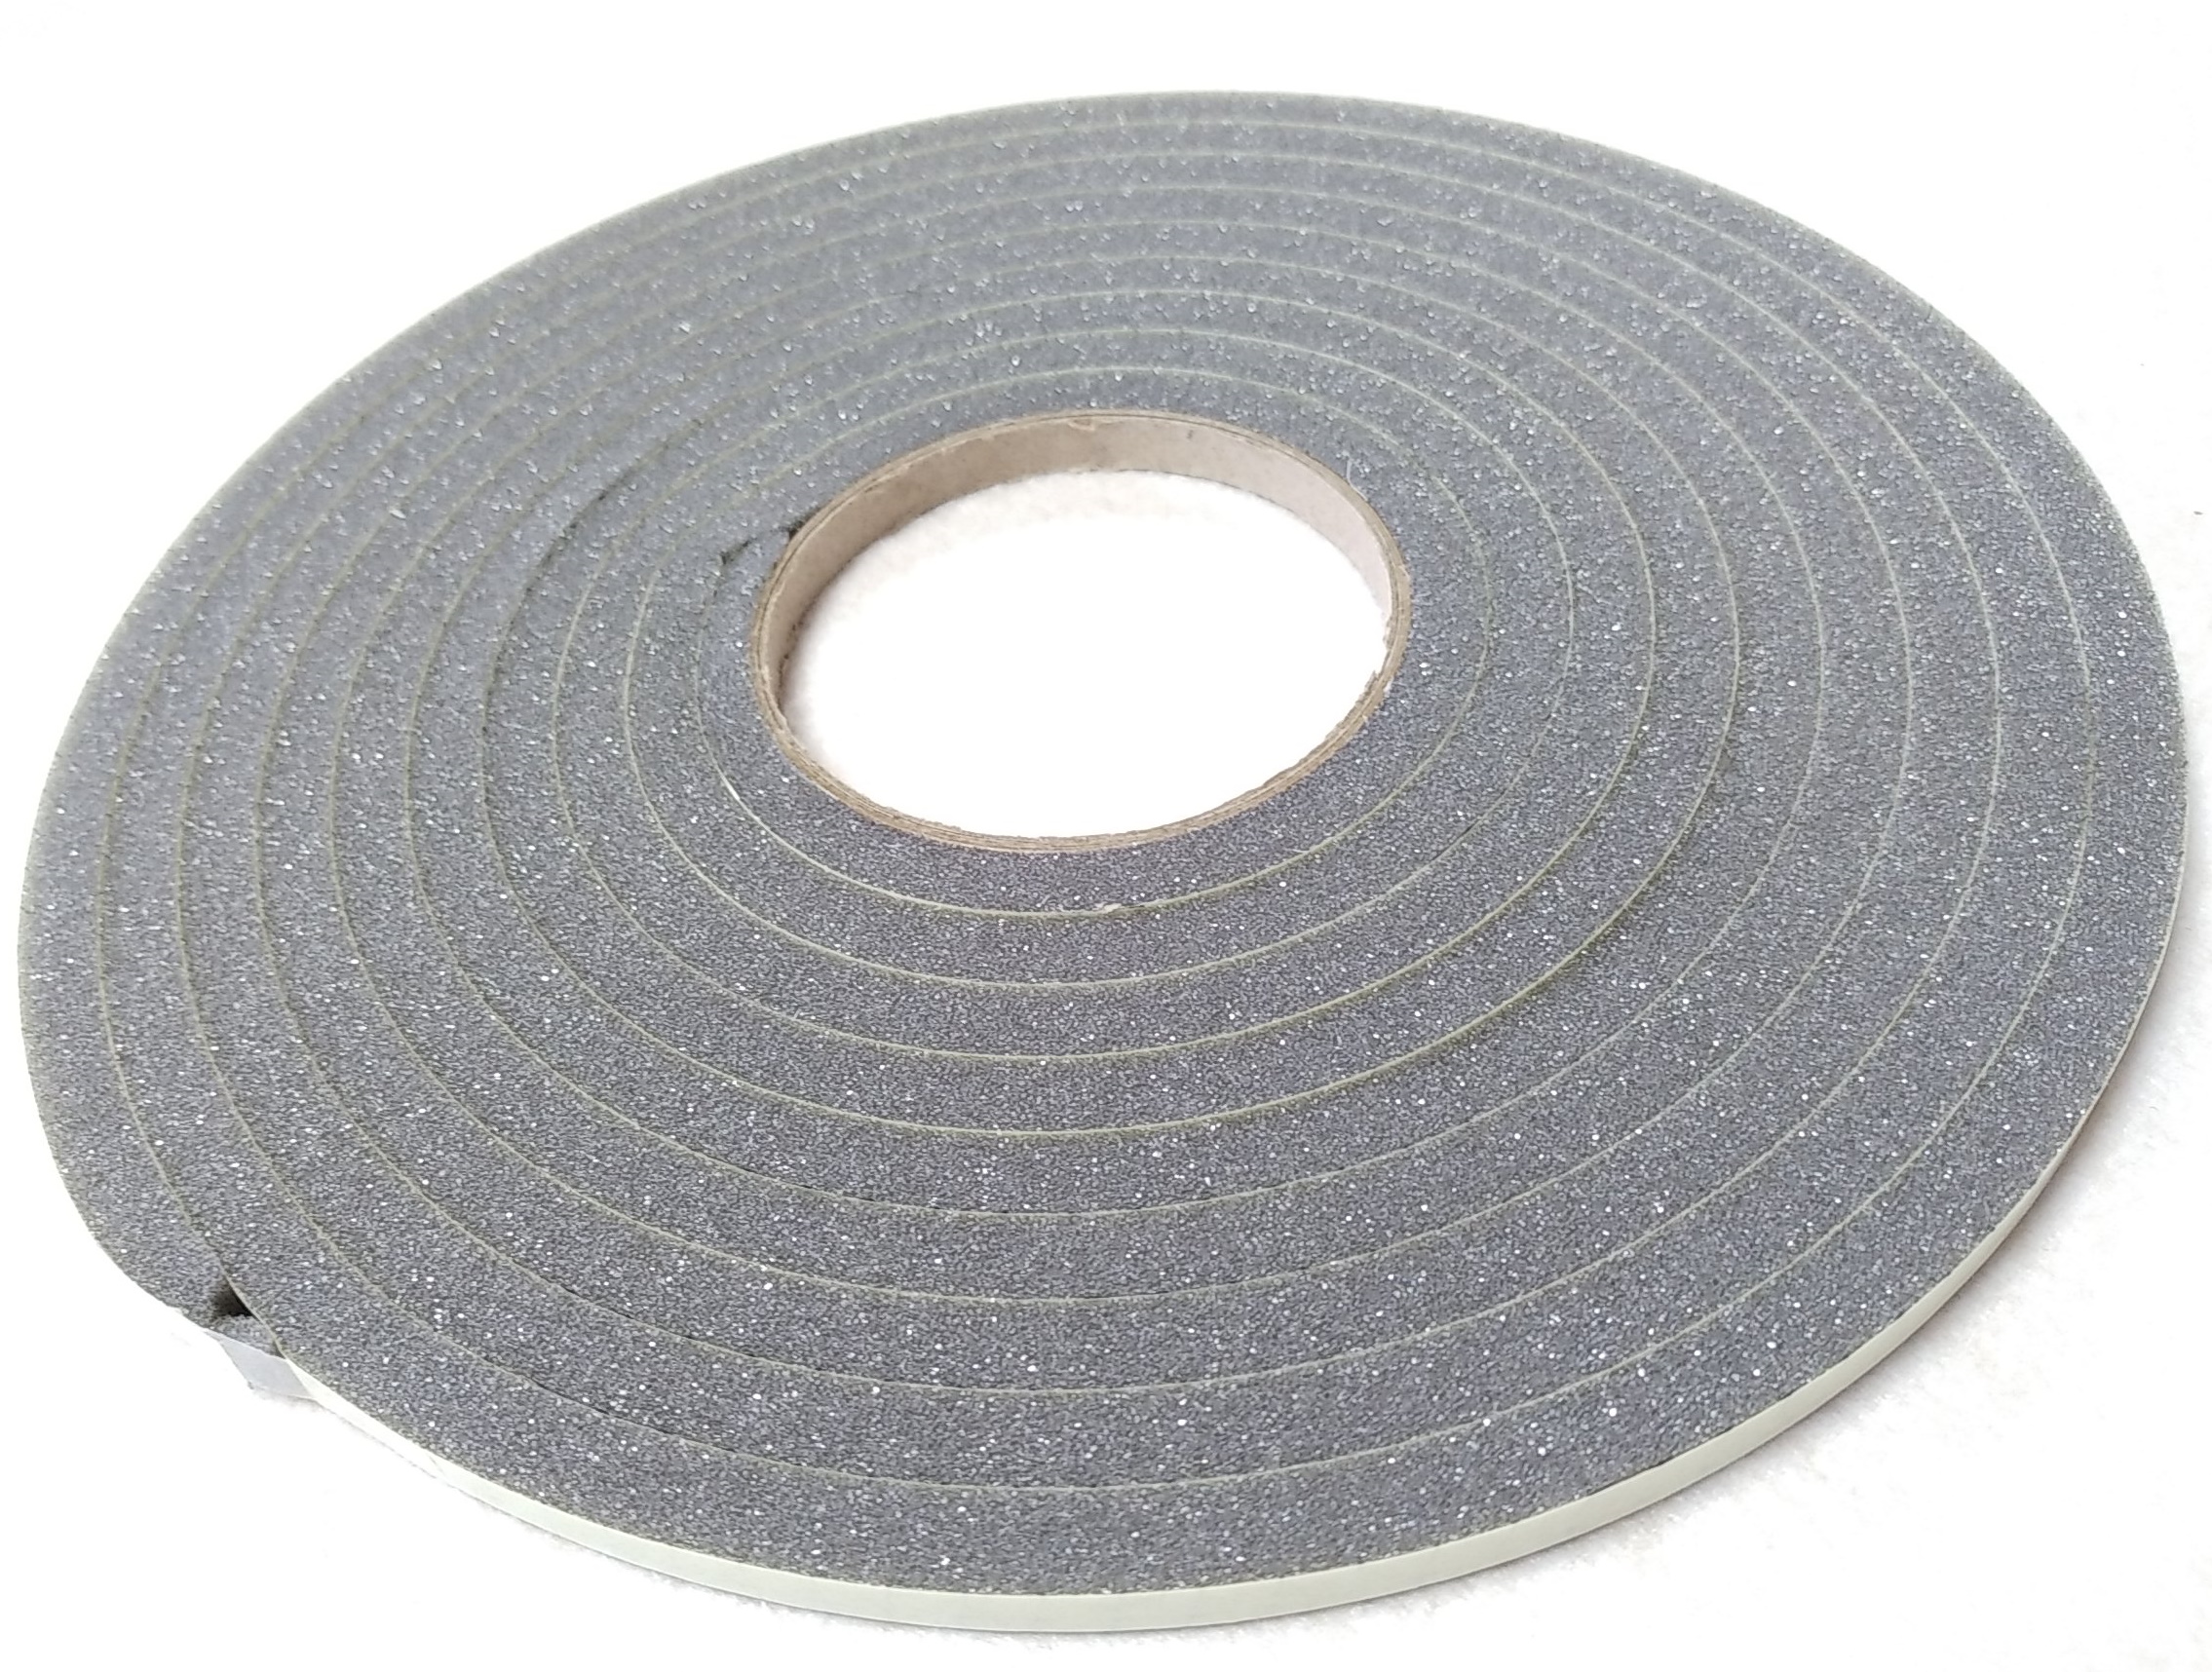 Acoustic sealing PU Foam strips